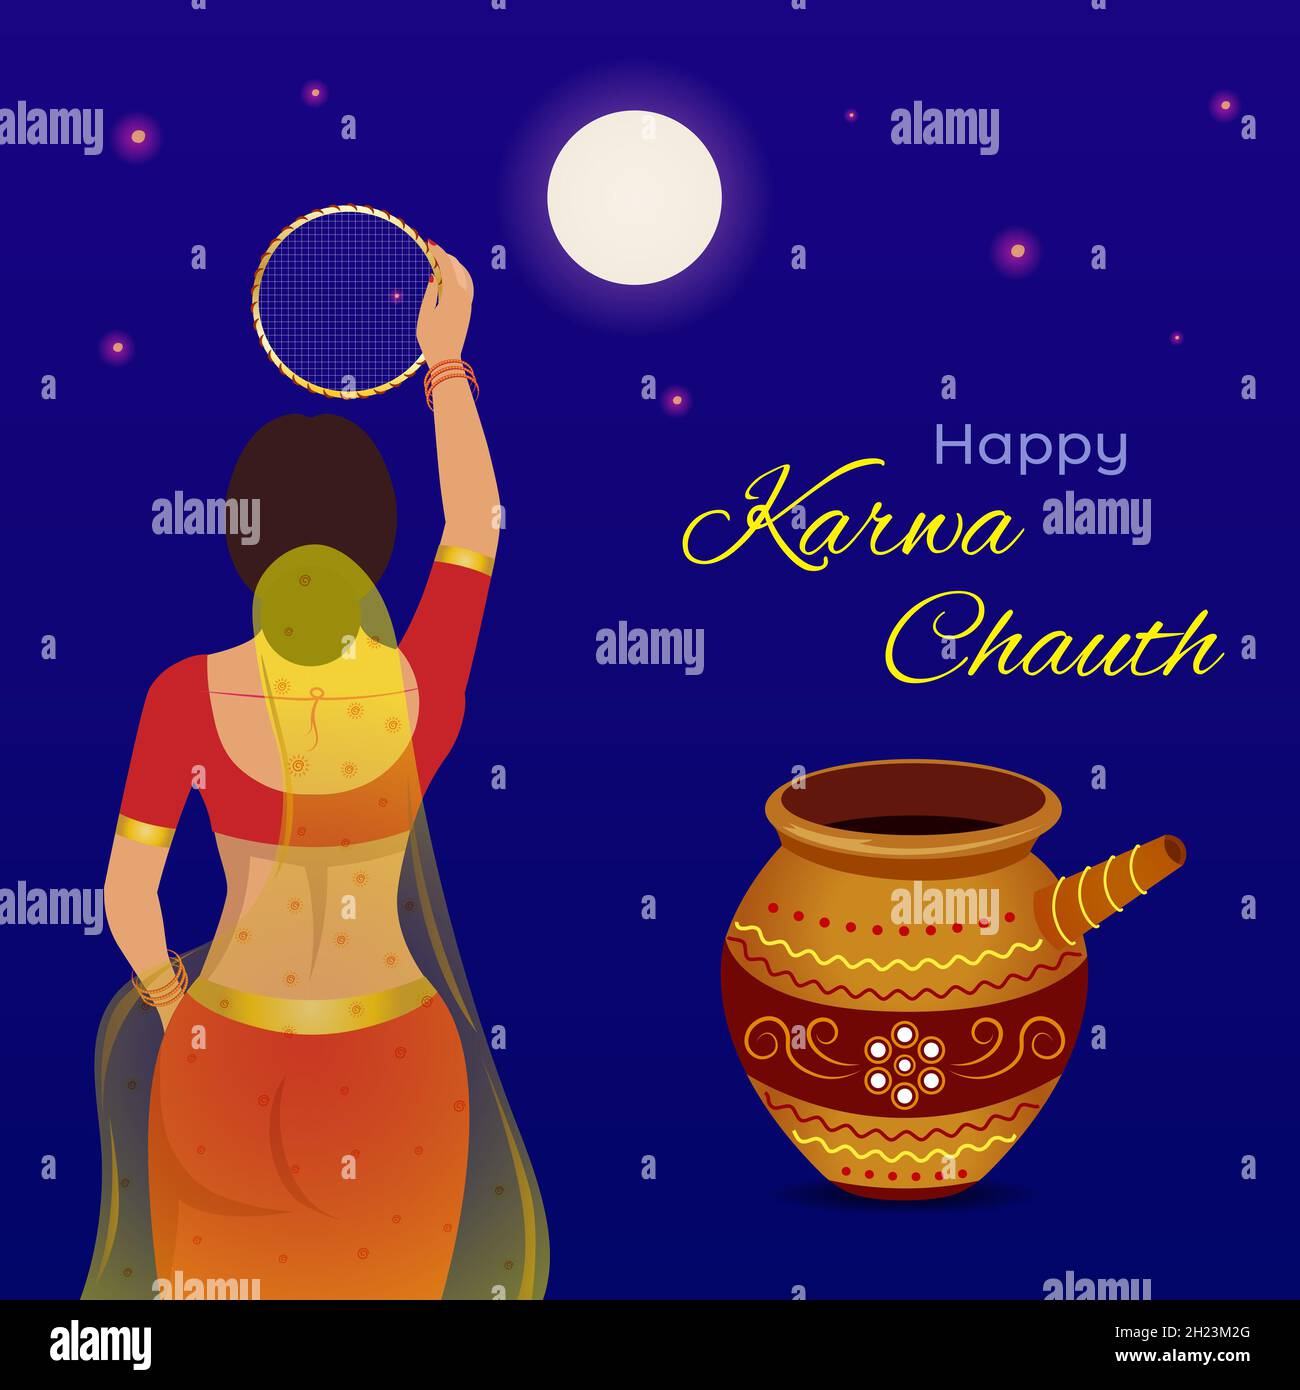 Fröhliche Karwa Chauth Festivalgrafik. Kreatives Design einer indischen Frau, die während Karwa Chauth durch das Sieb schaut, um das Fasten zu brechen. Stock Vektor